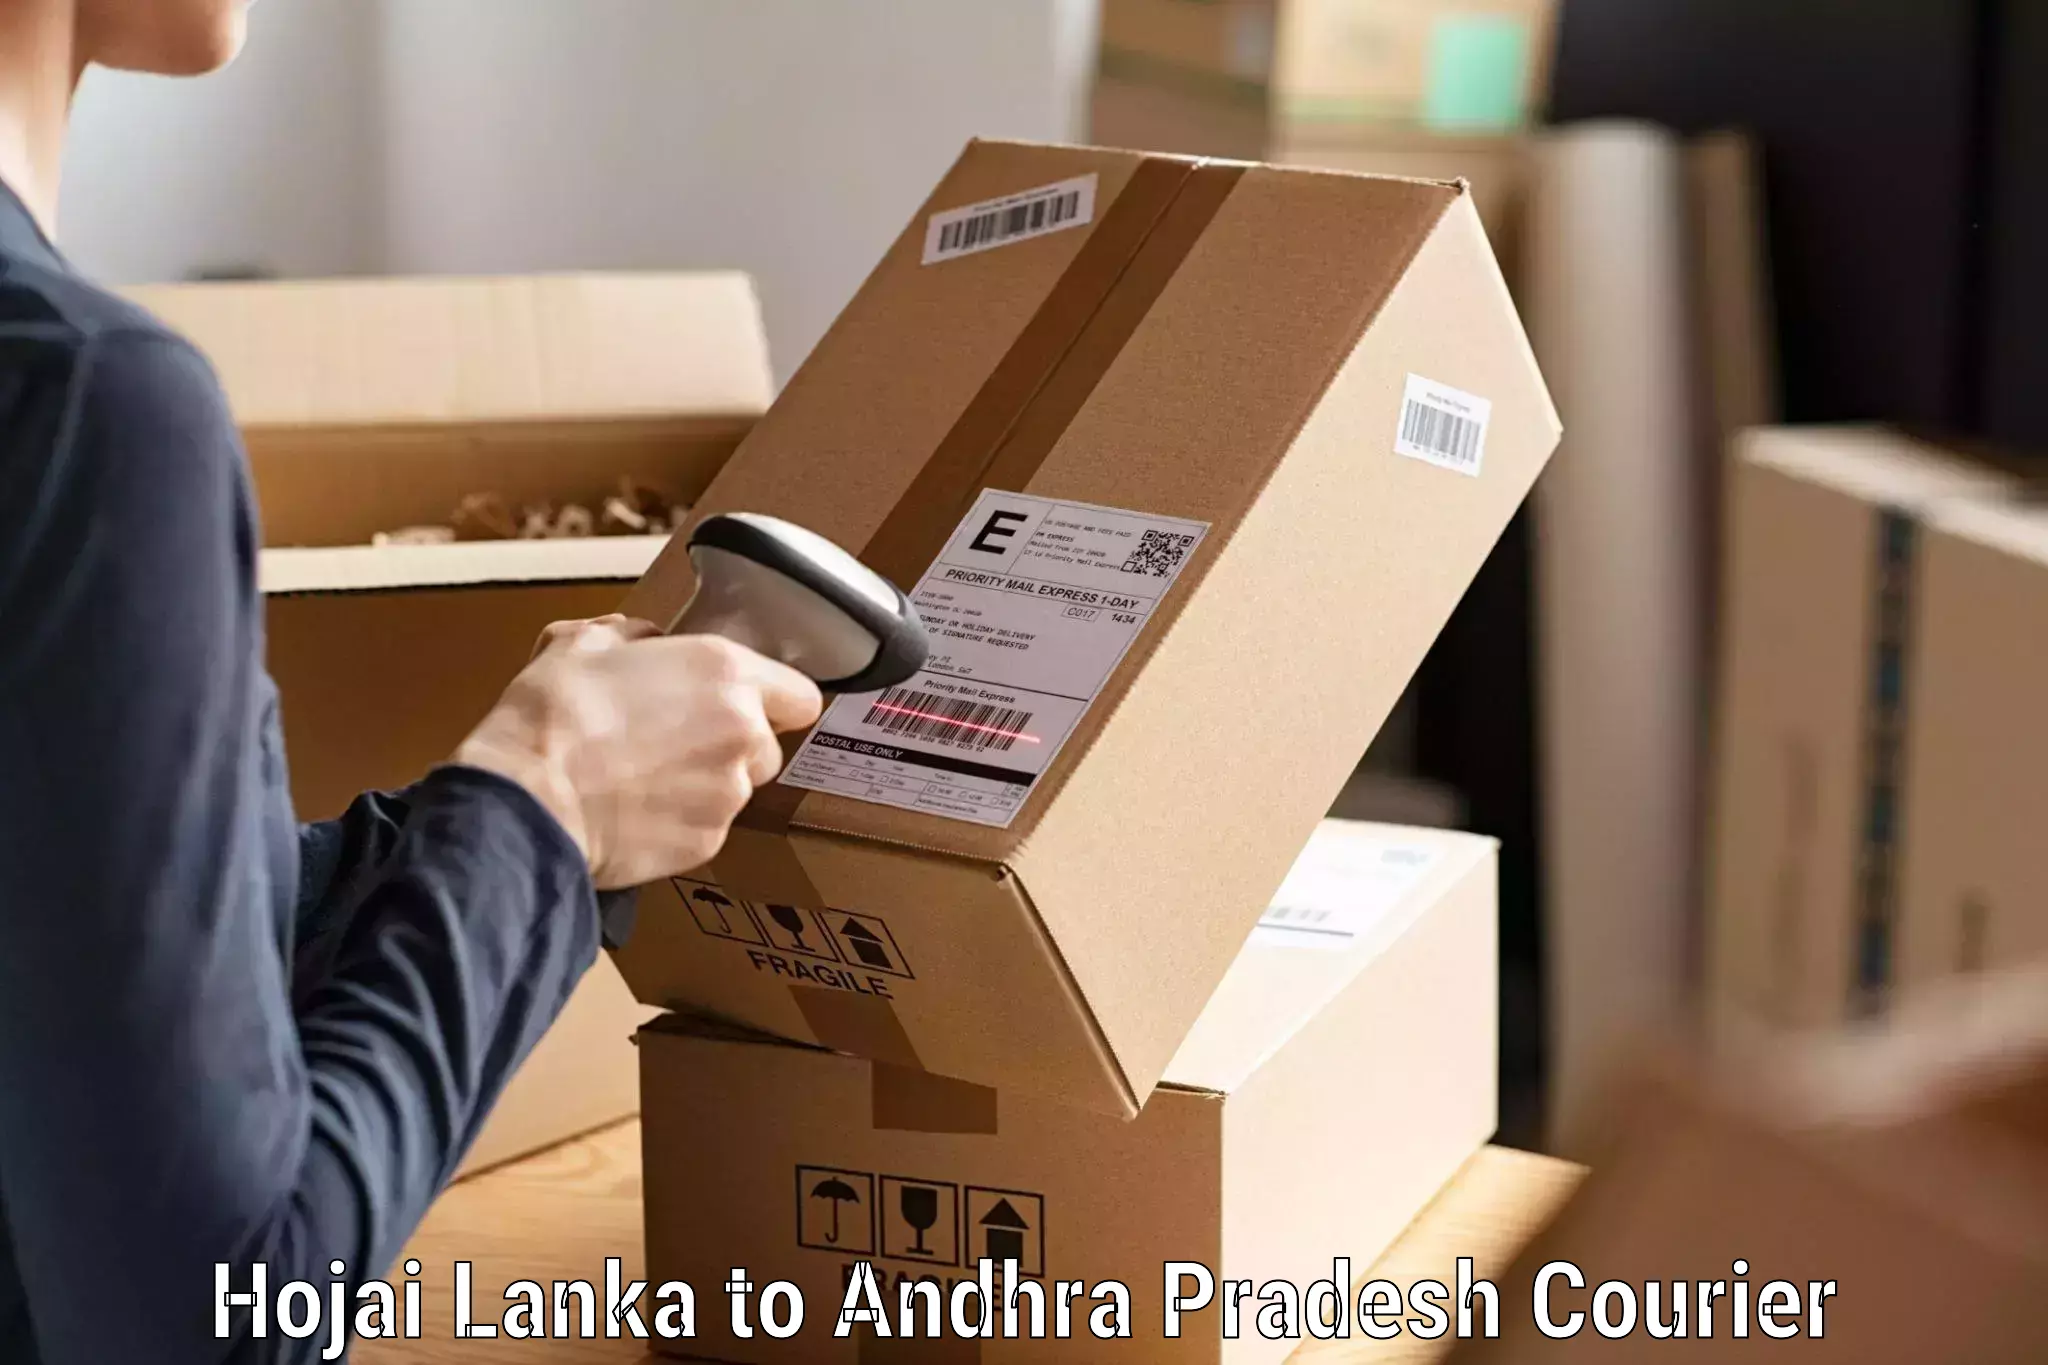 Express courier capabilities Hojai Lanka to Kambadur